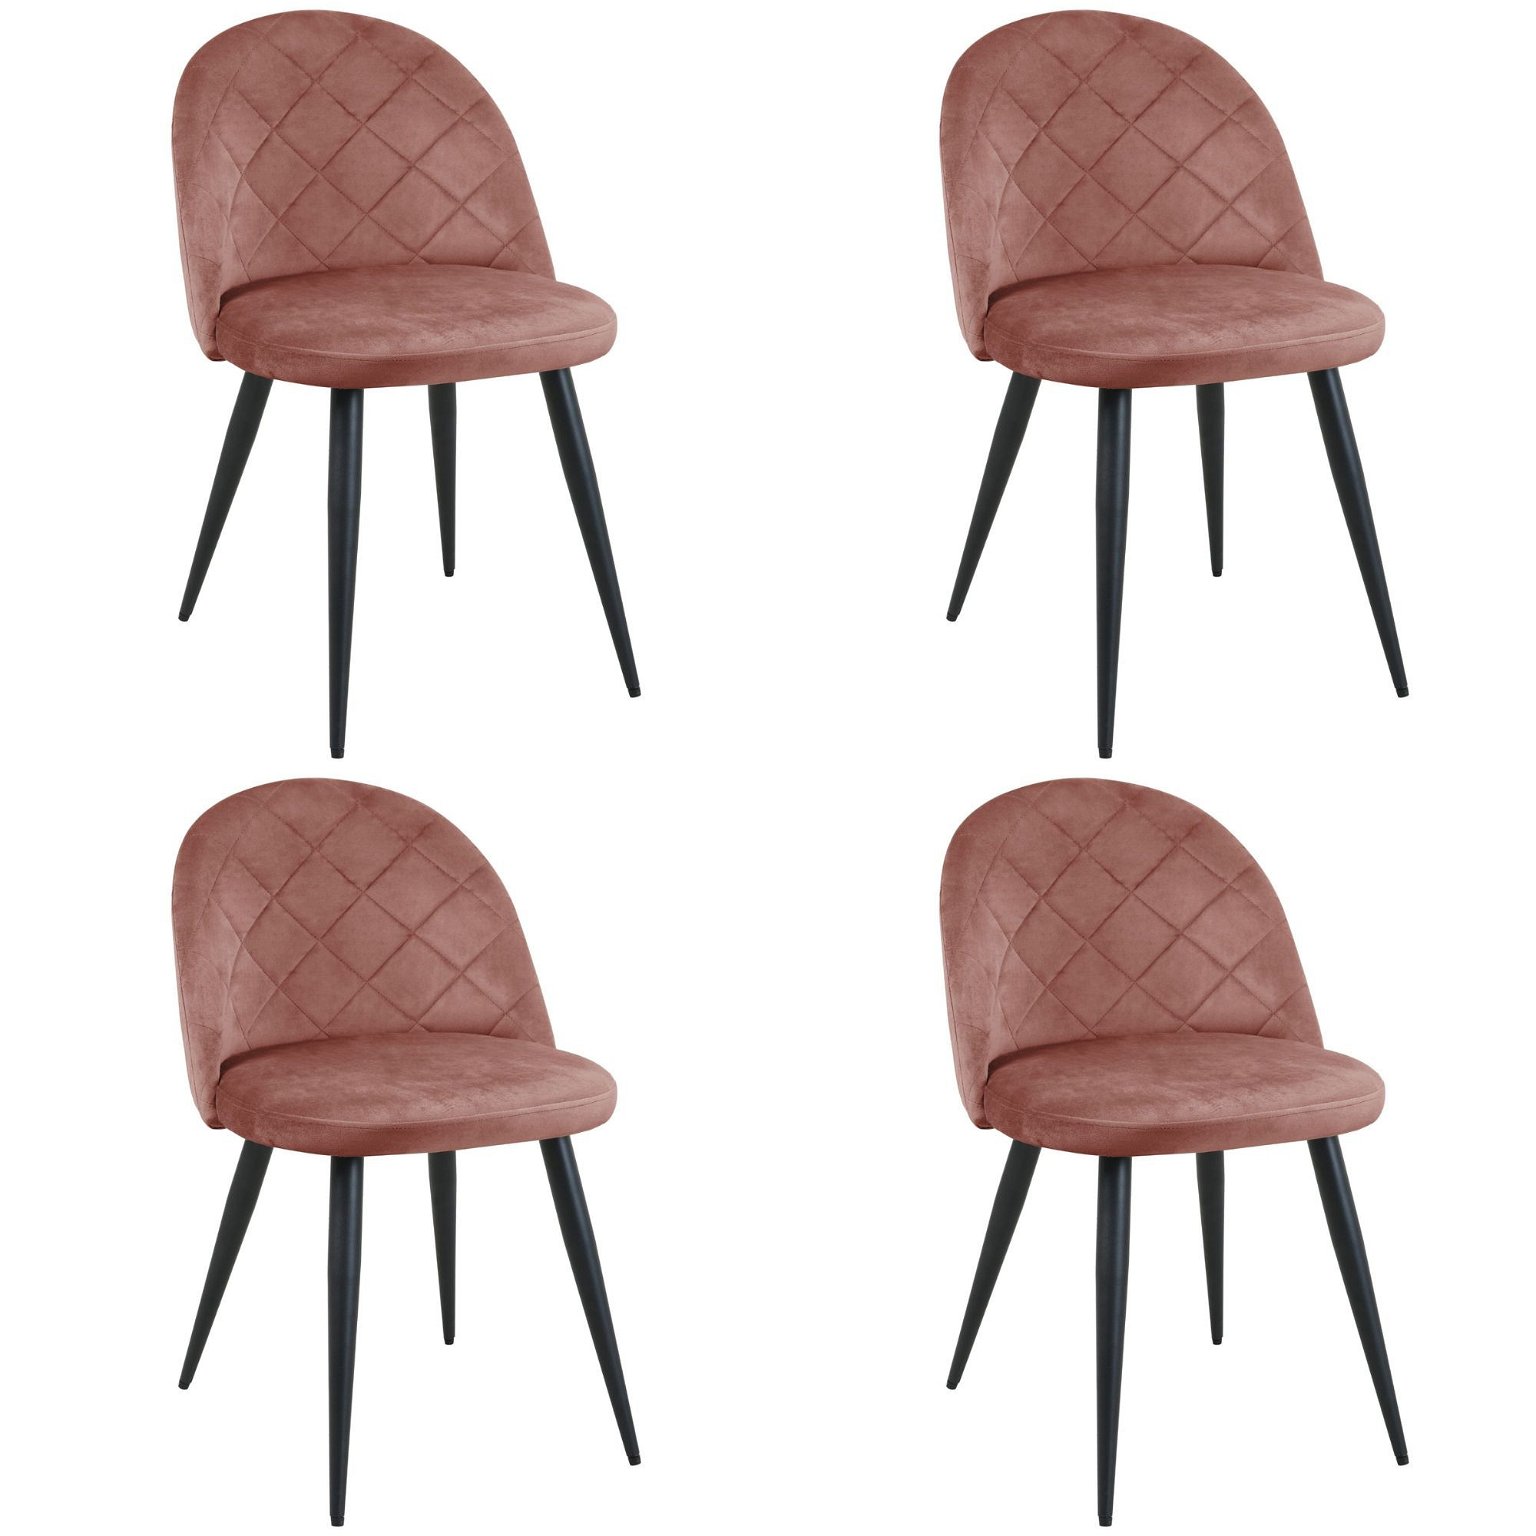 4-ių kėdžių komplektas SJ.077, rožinė